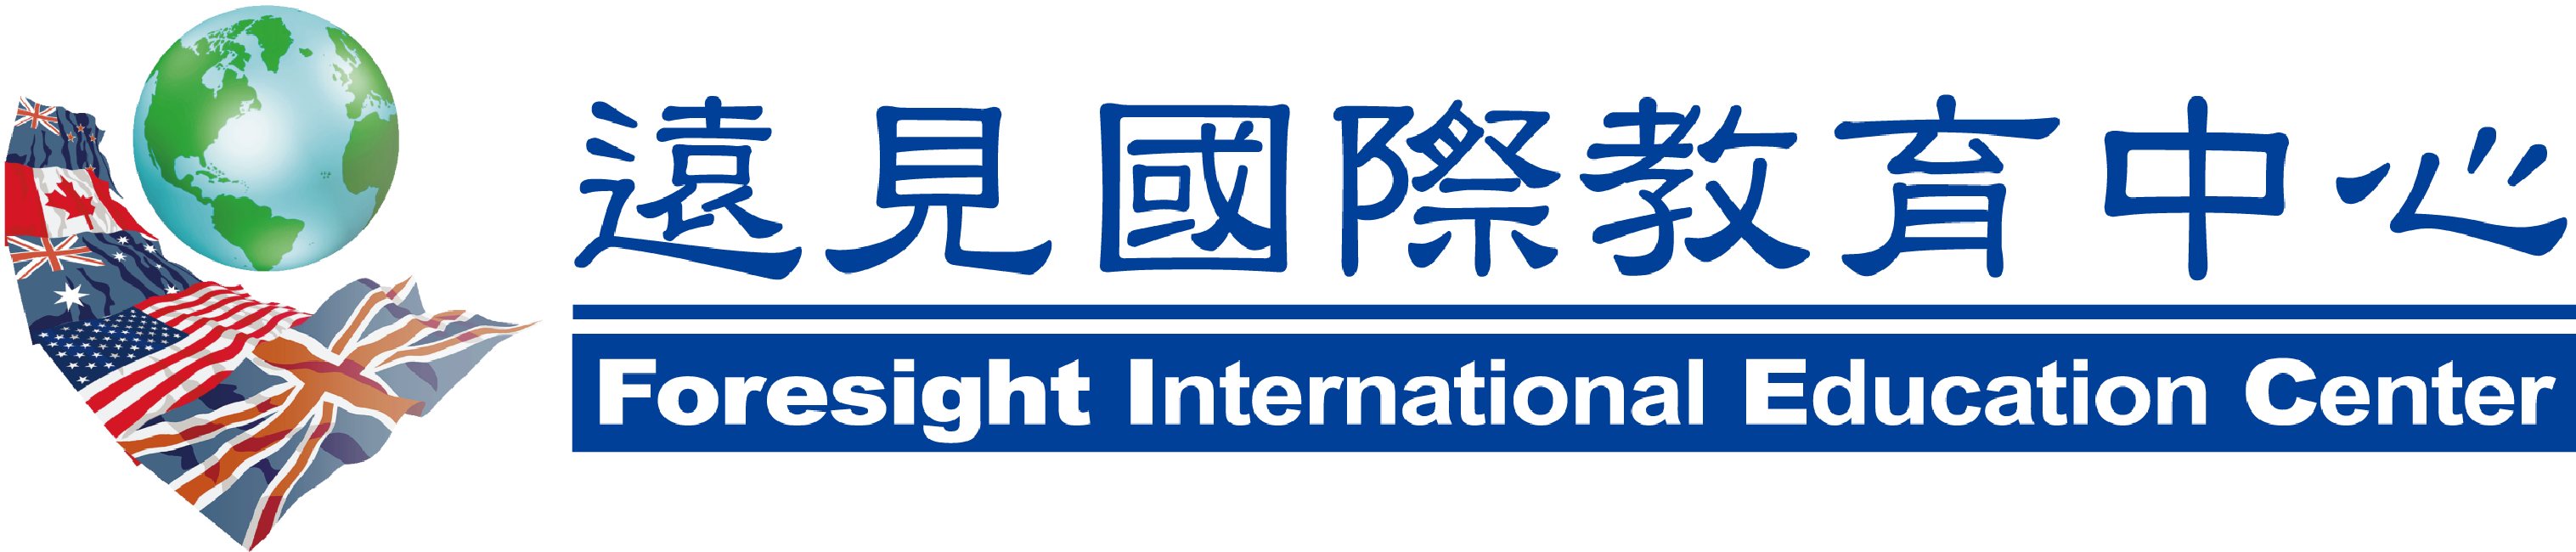 遠見國際教育中心 Logo